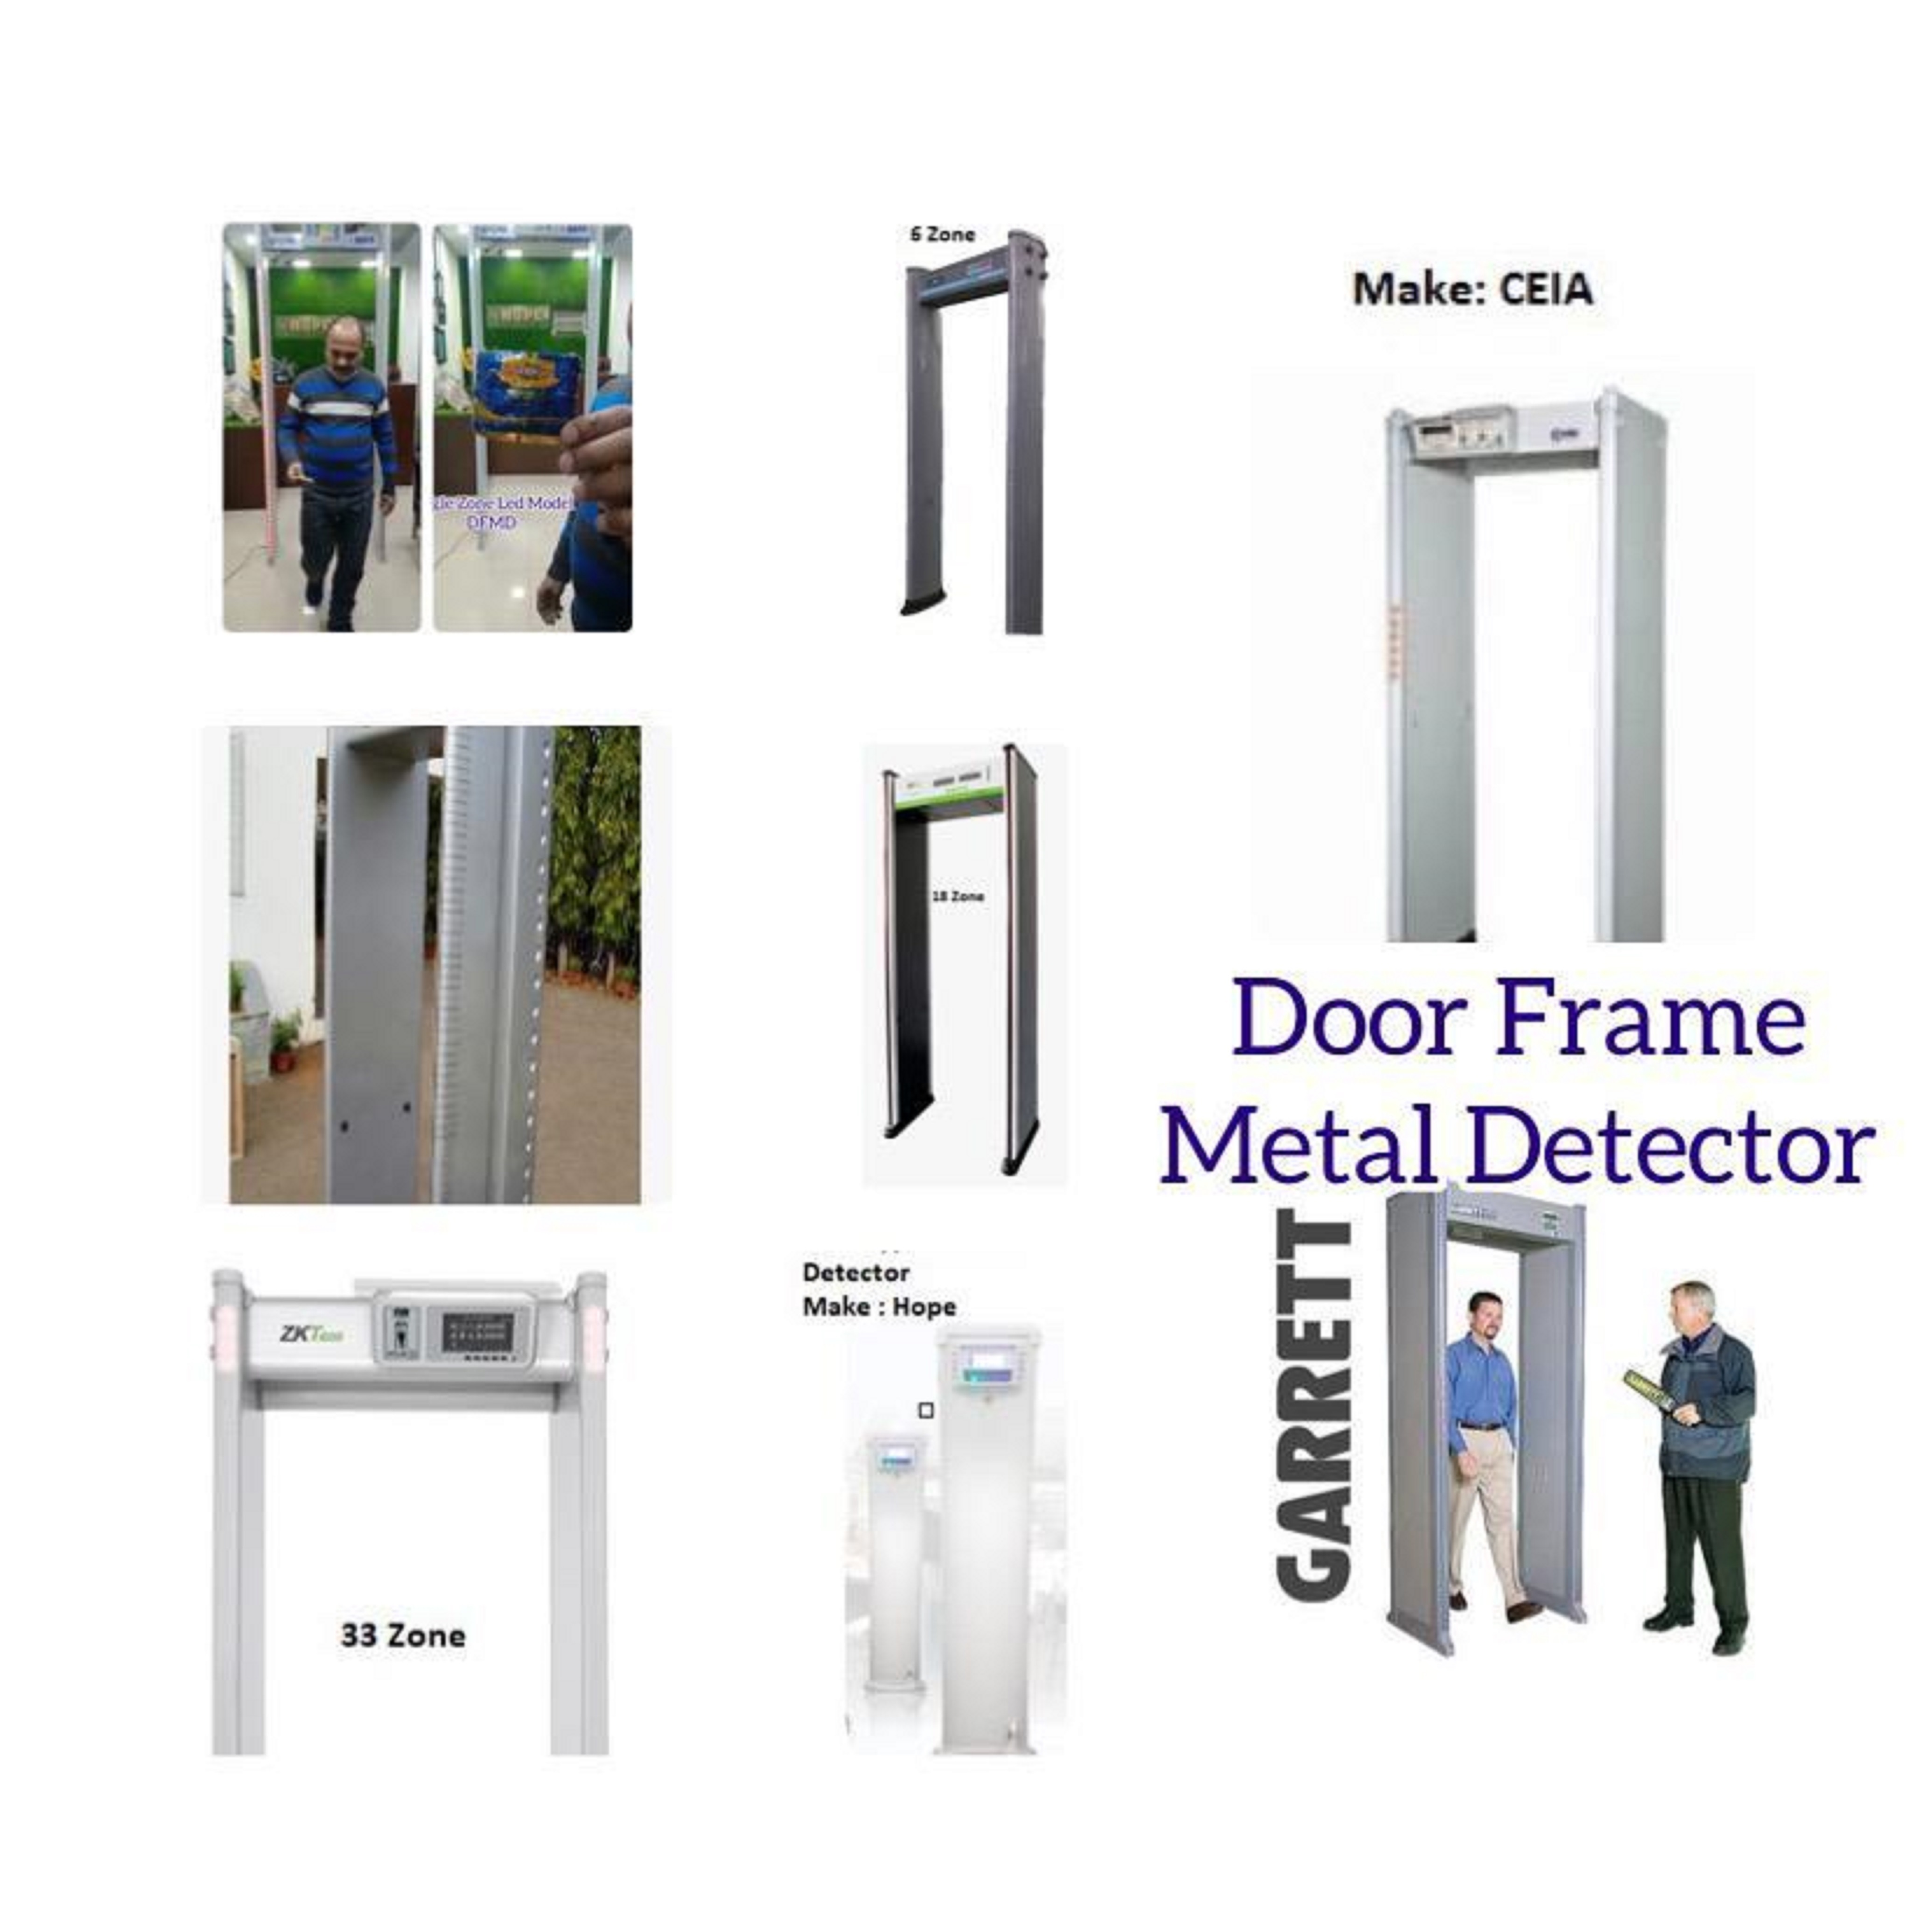 Door Frame Metal Detector  6 Zone